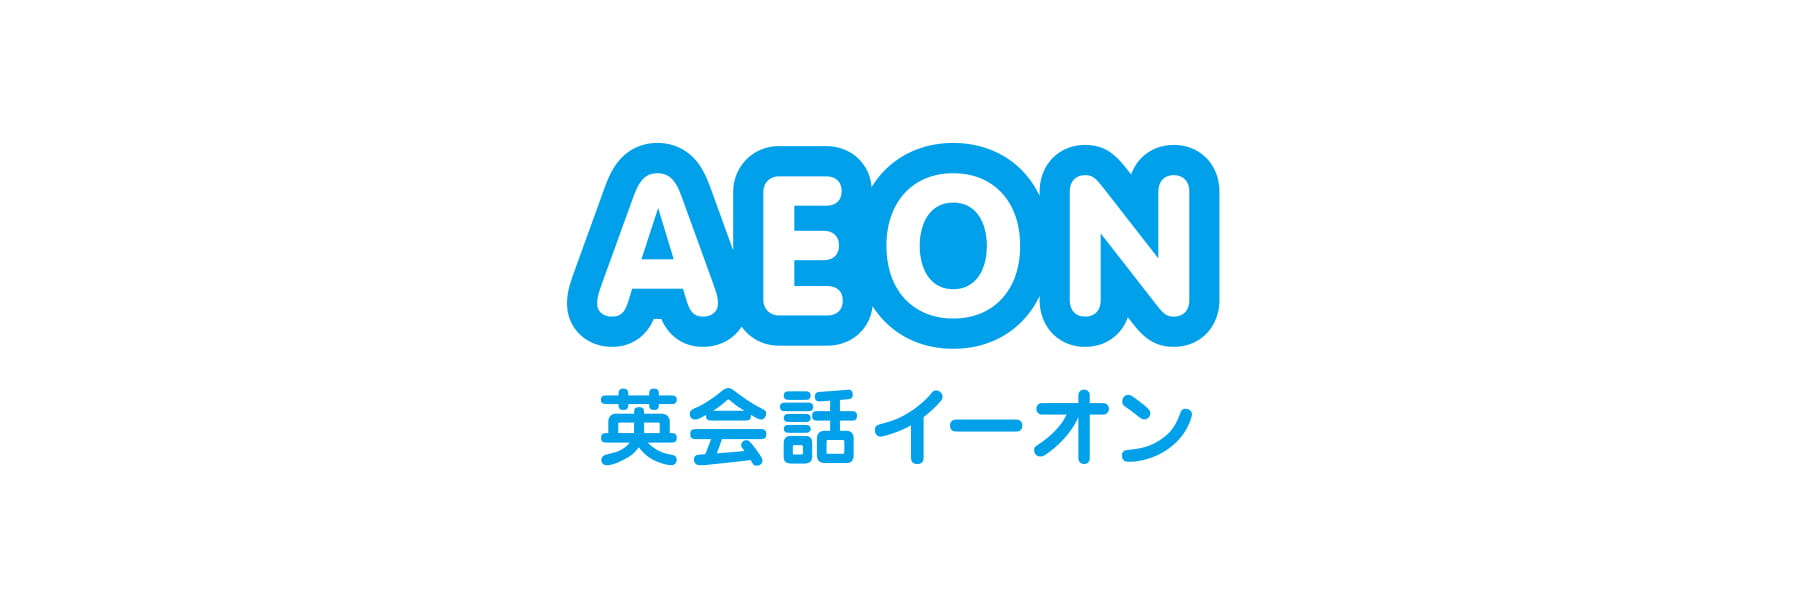 株式会社イーオンのロゴ